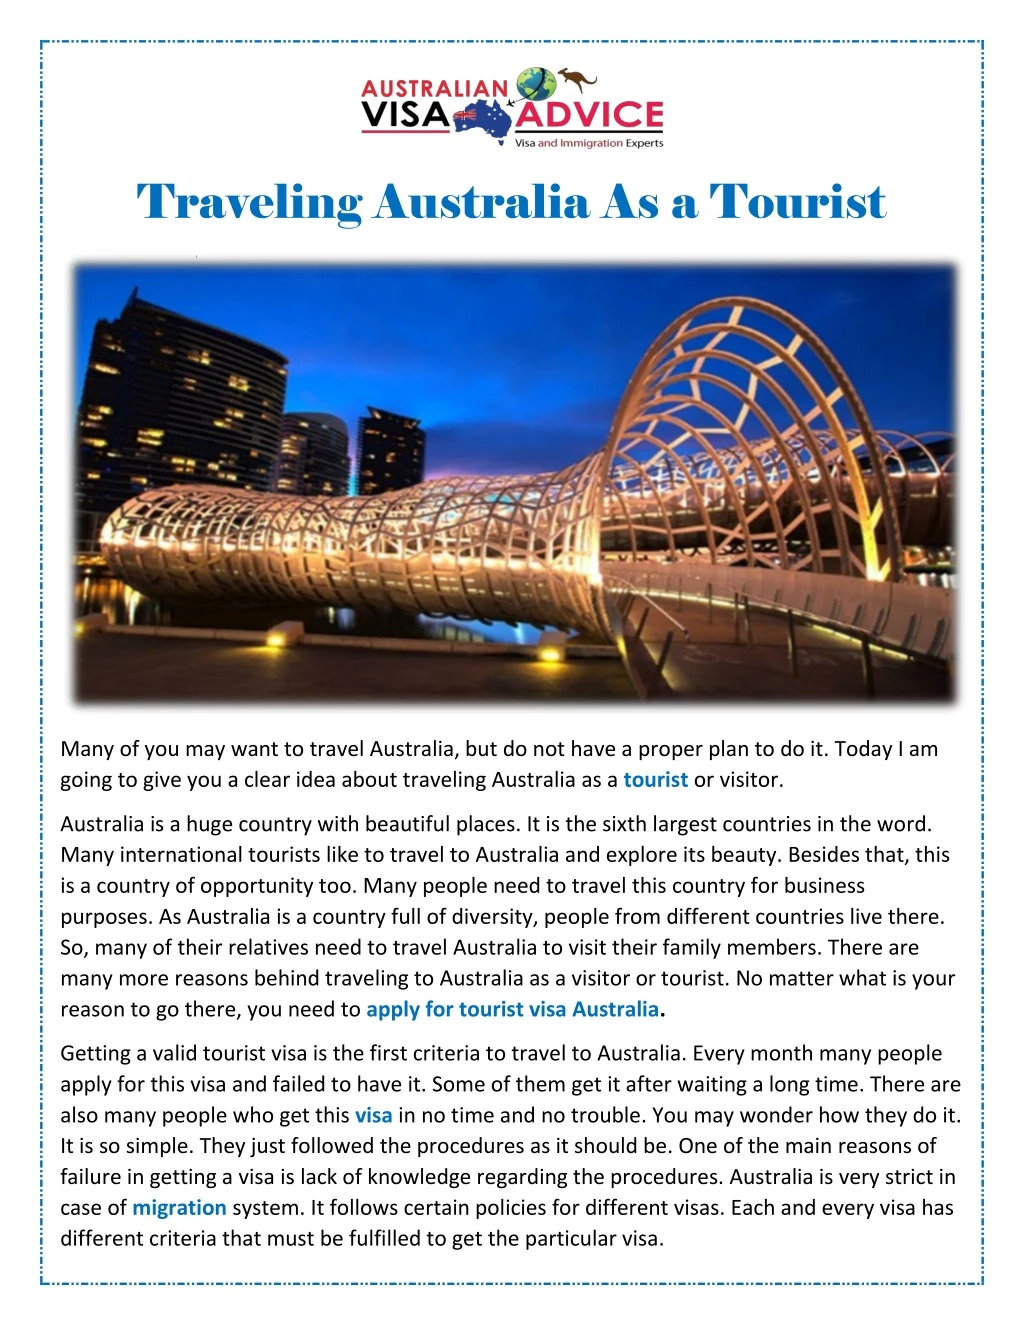 traveling australia as a tourist